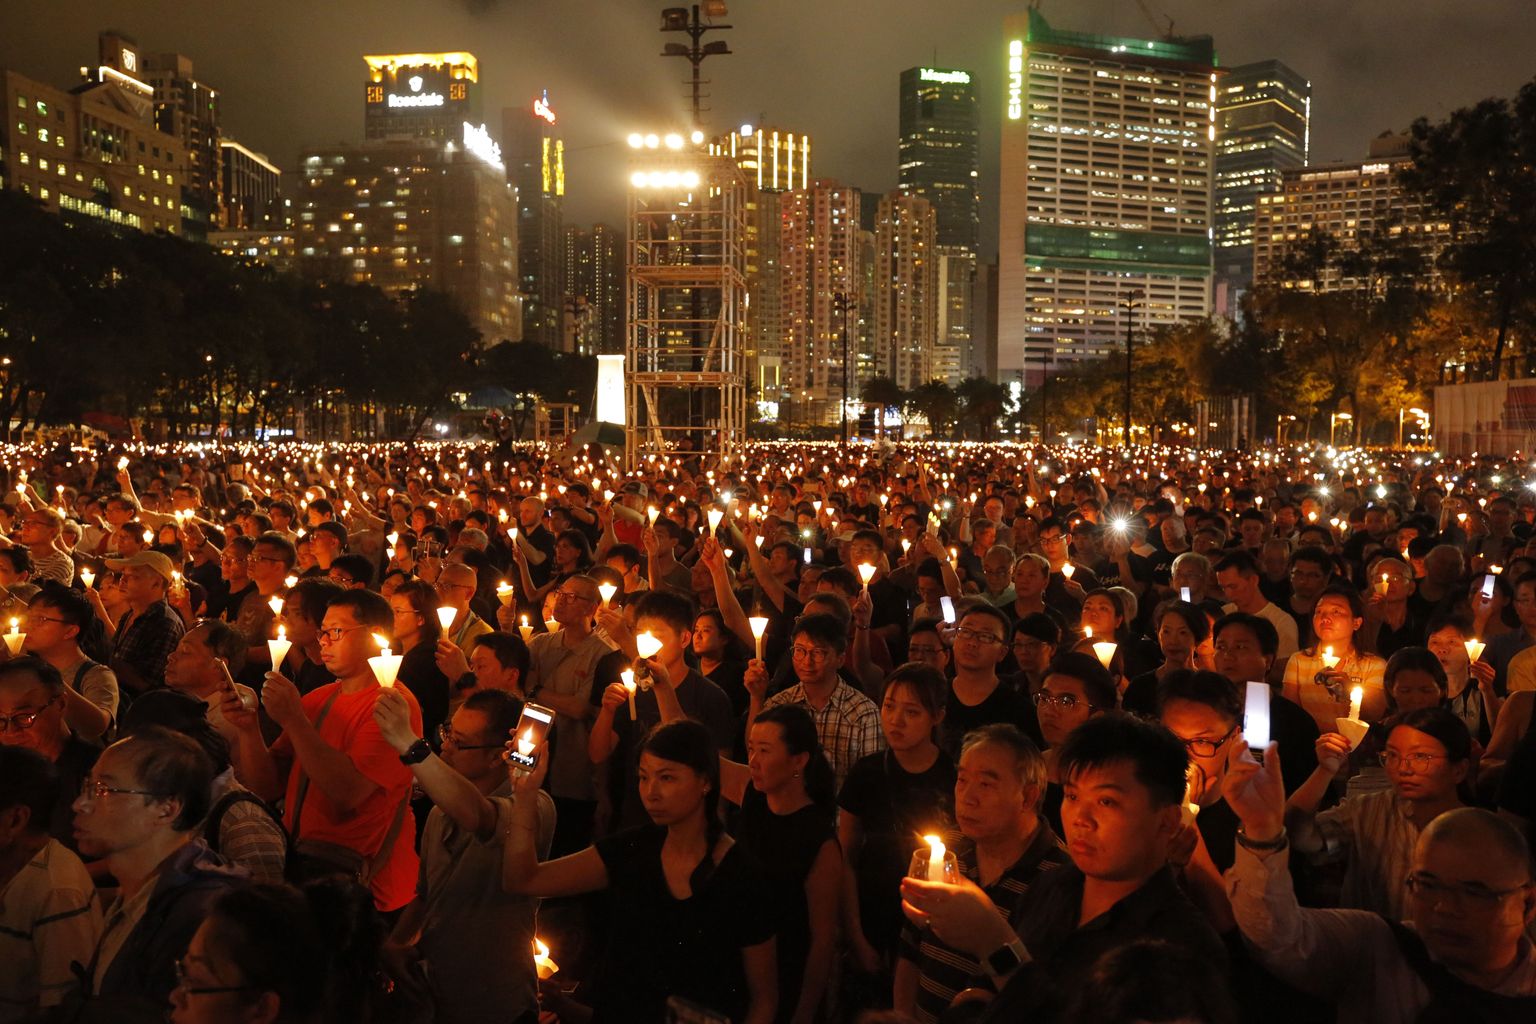 Tiananmeni väljaku veresauna iga-aastane mälestustalitus Hongkongis. 4. juuni 2019.